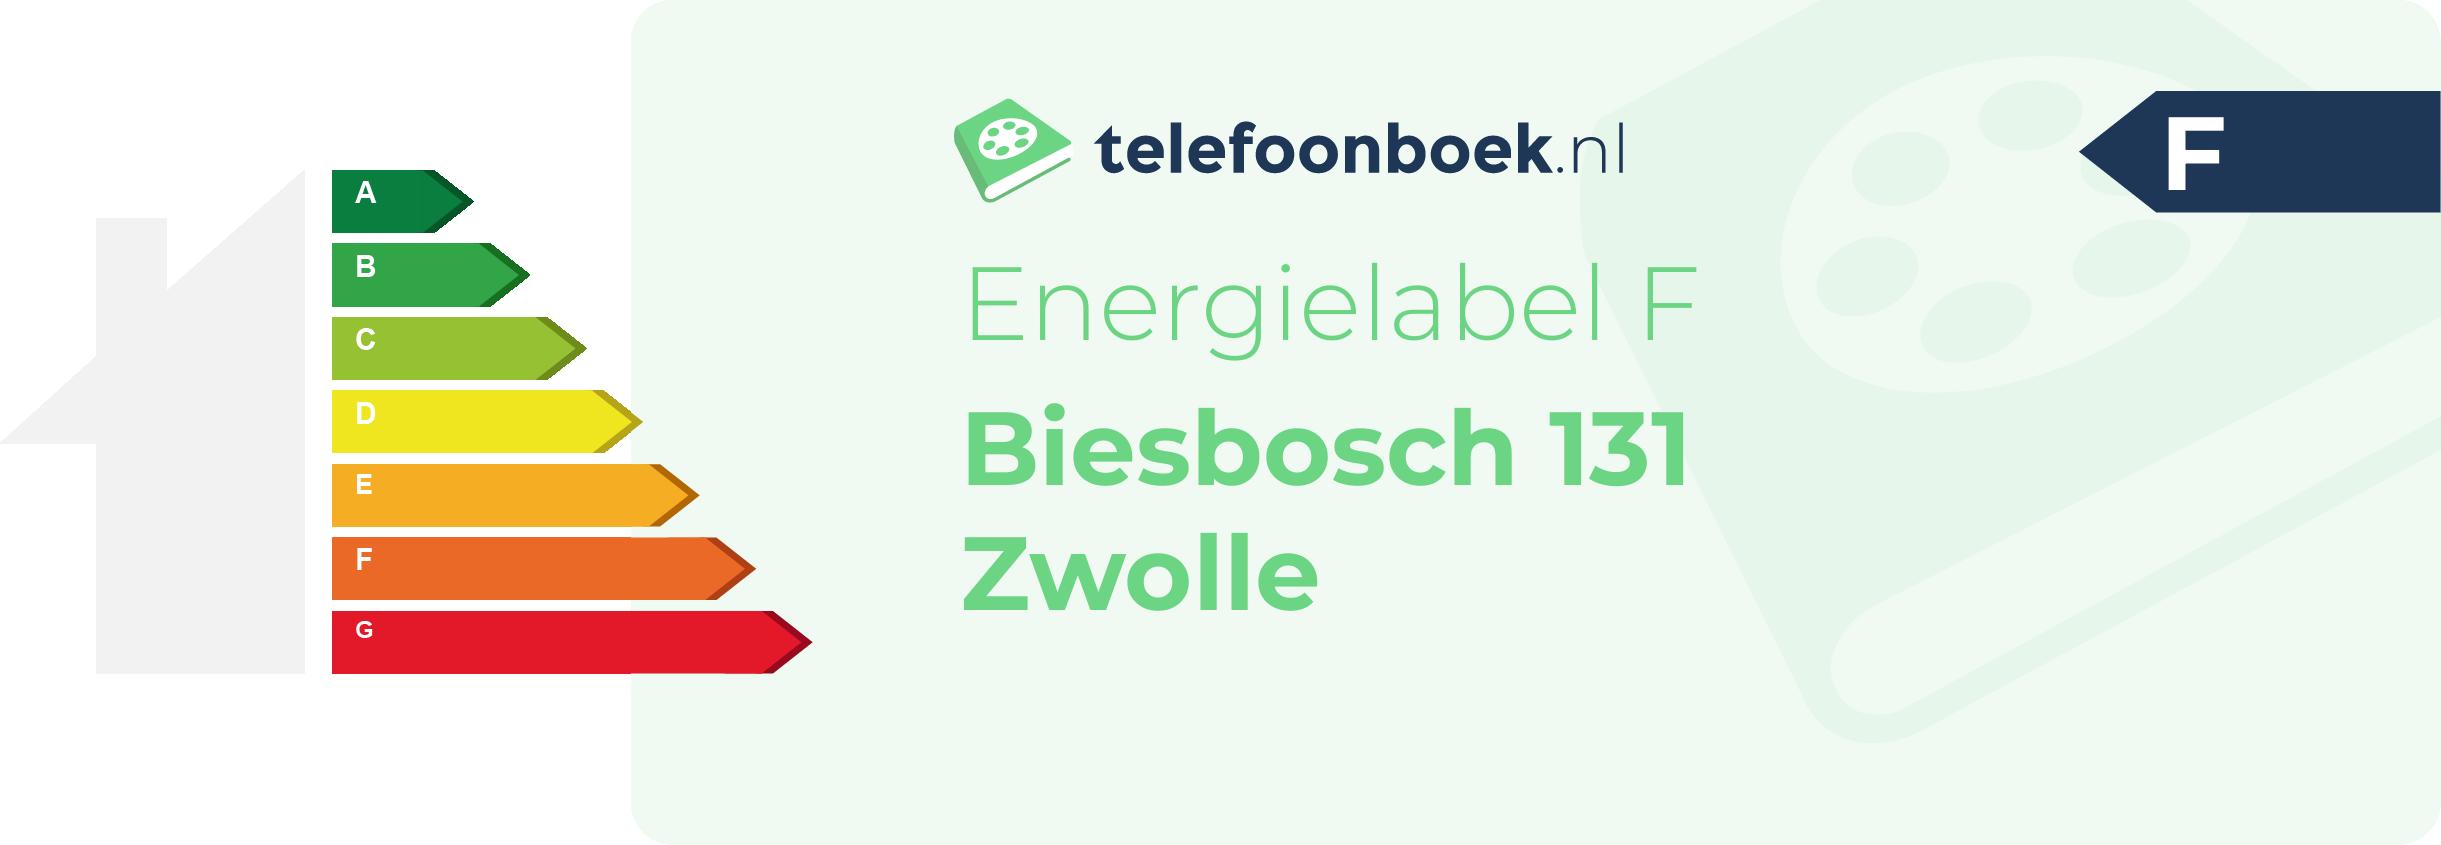 Energielabel Biesbosch 131 Zwolle